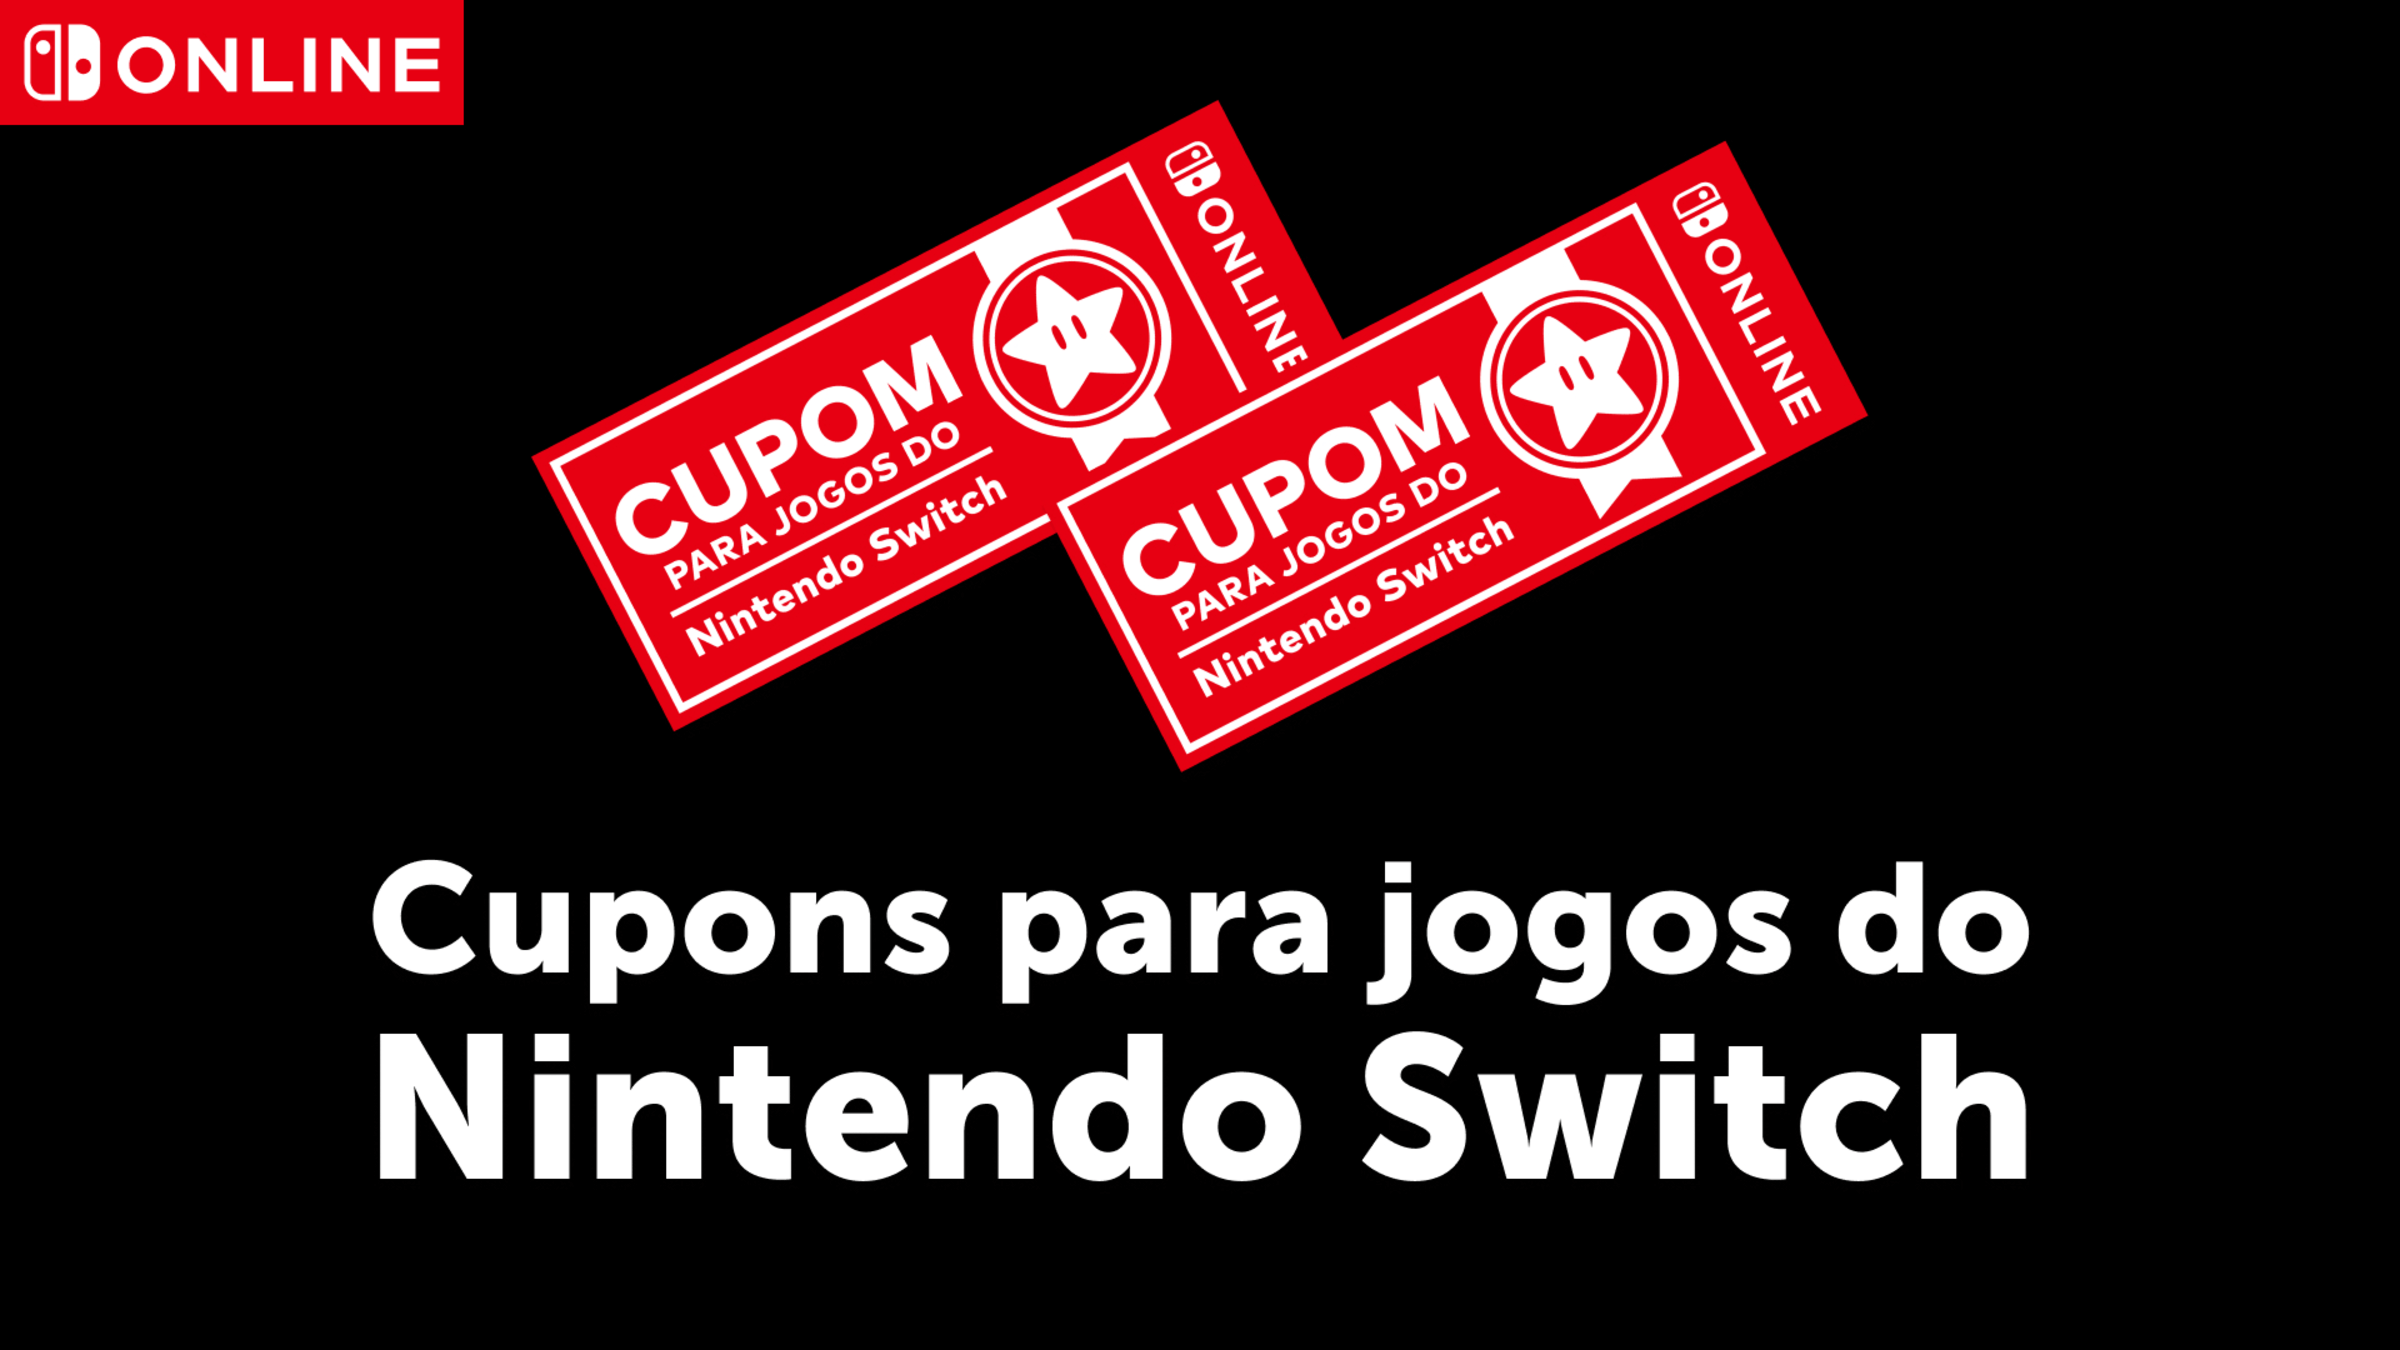 Nintendo eShop para Switch está chegando ao Brasil com 400 jogos